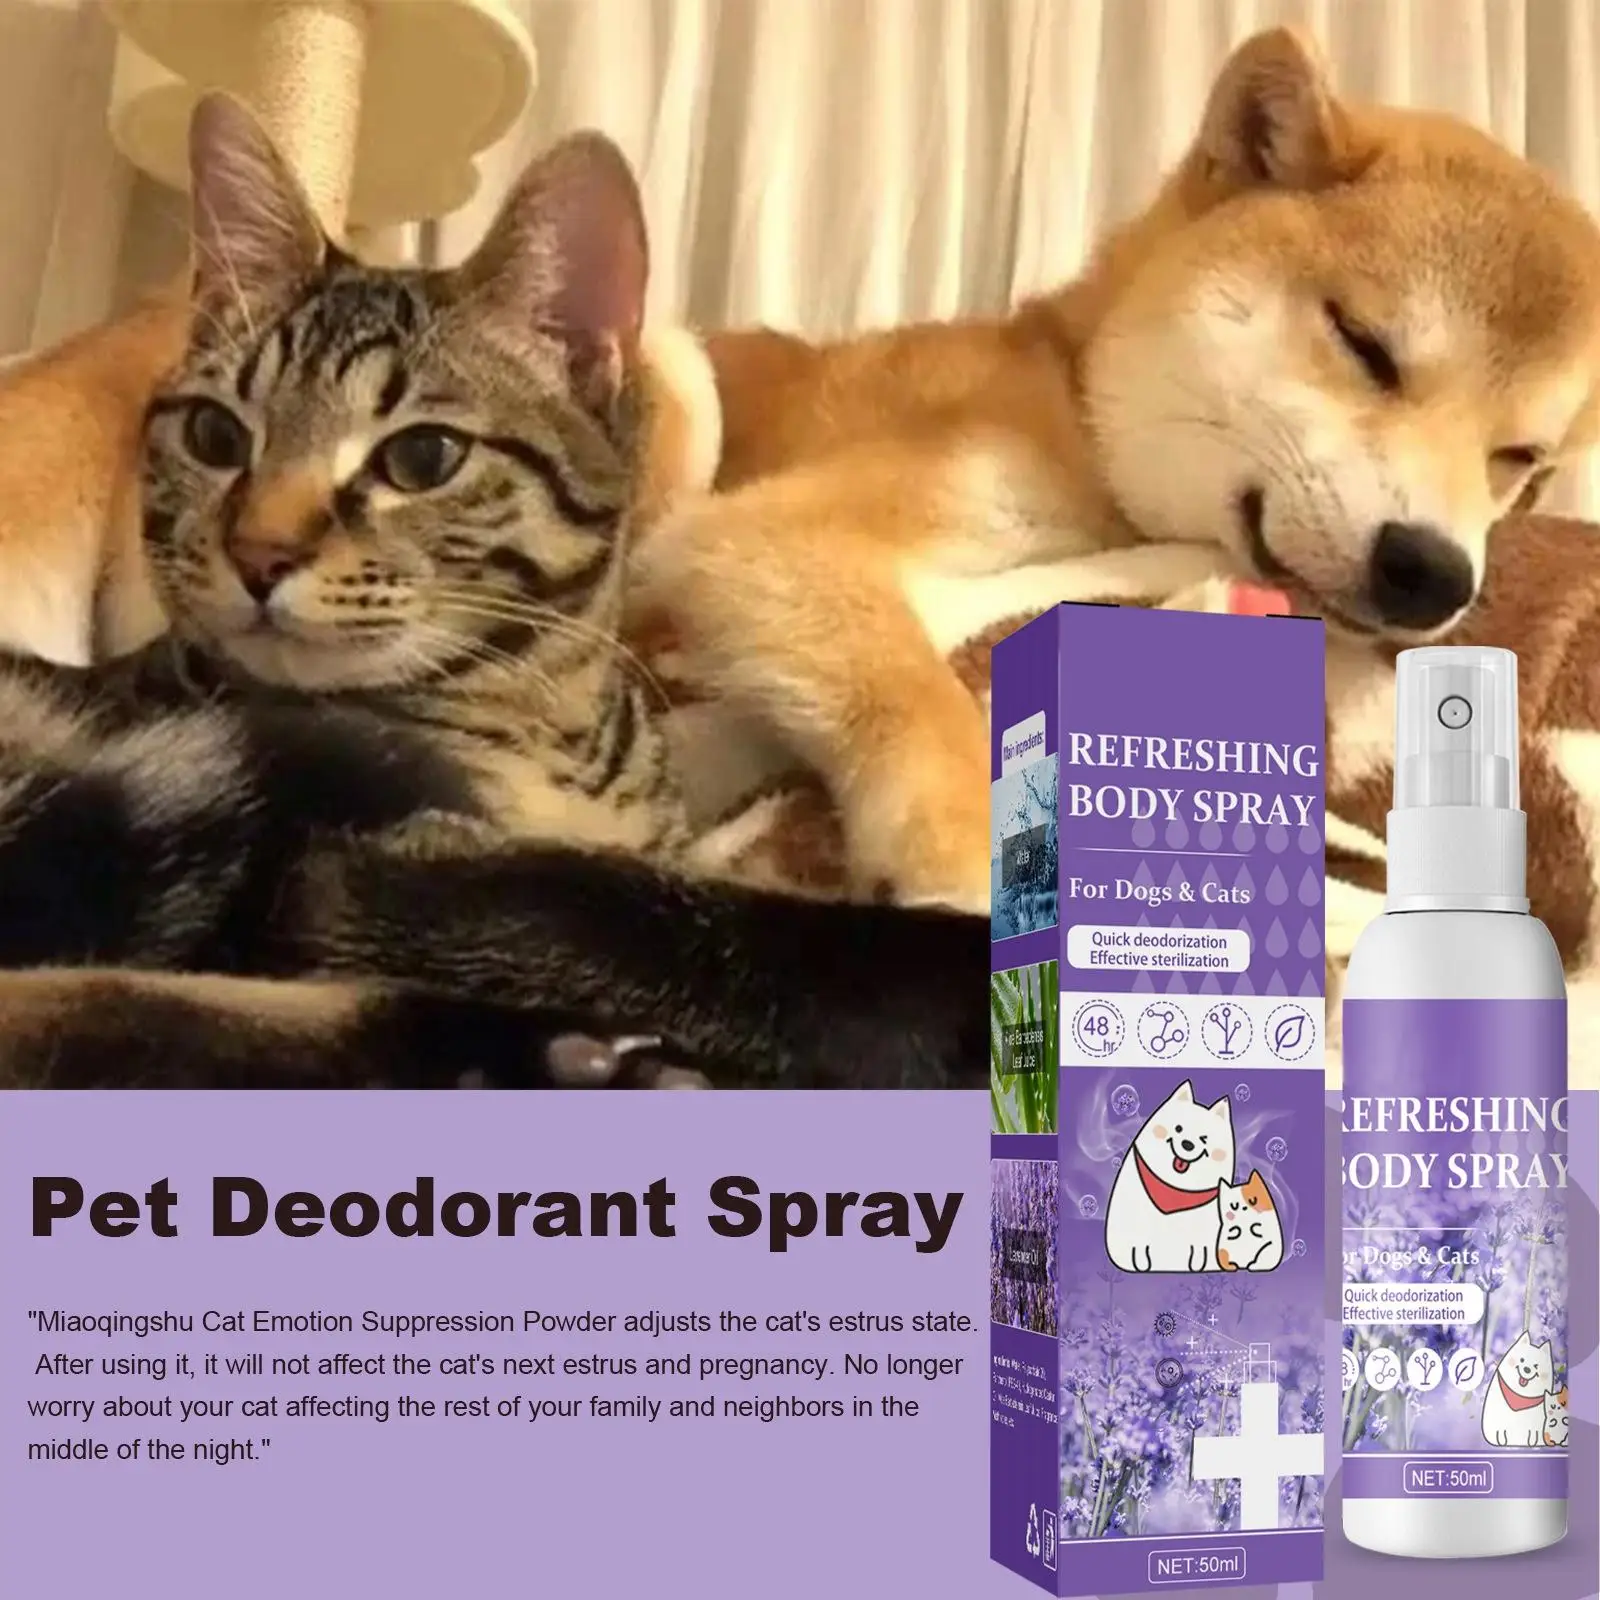 Pet Deodorant Spray,  Freshener  Dog Deodorizing Spray  The  Refreshes Deodorizes  Smell